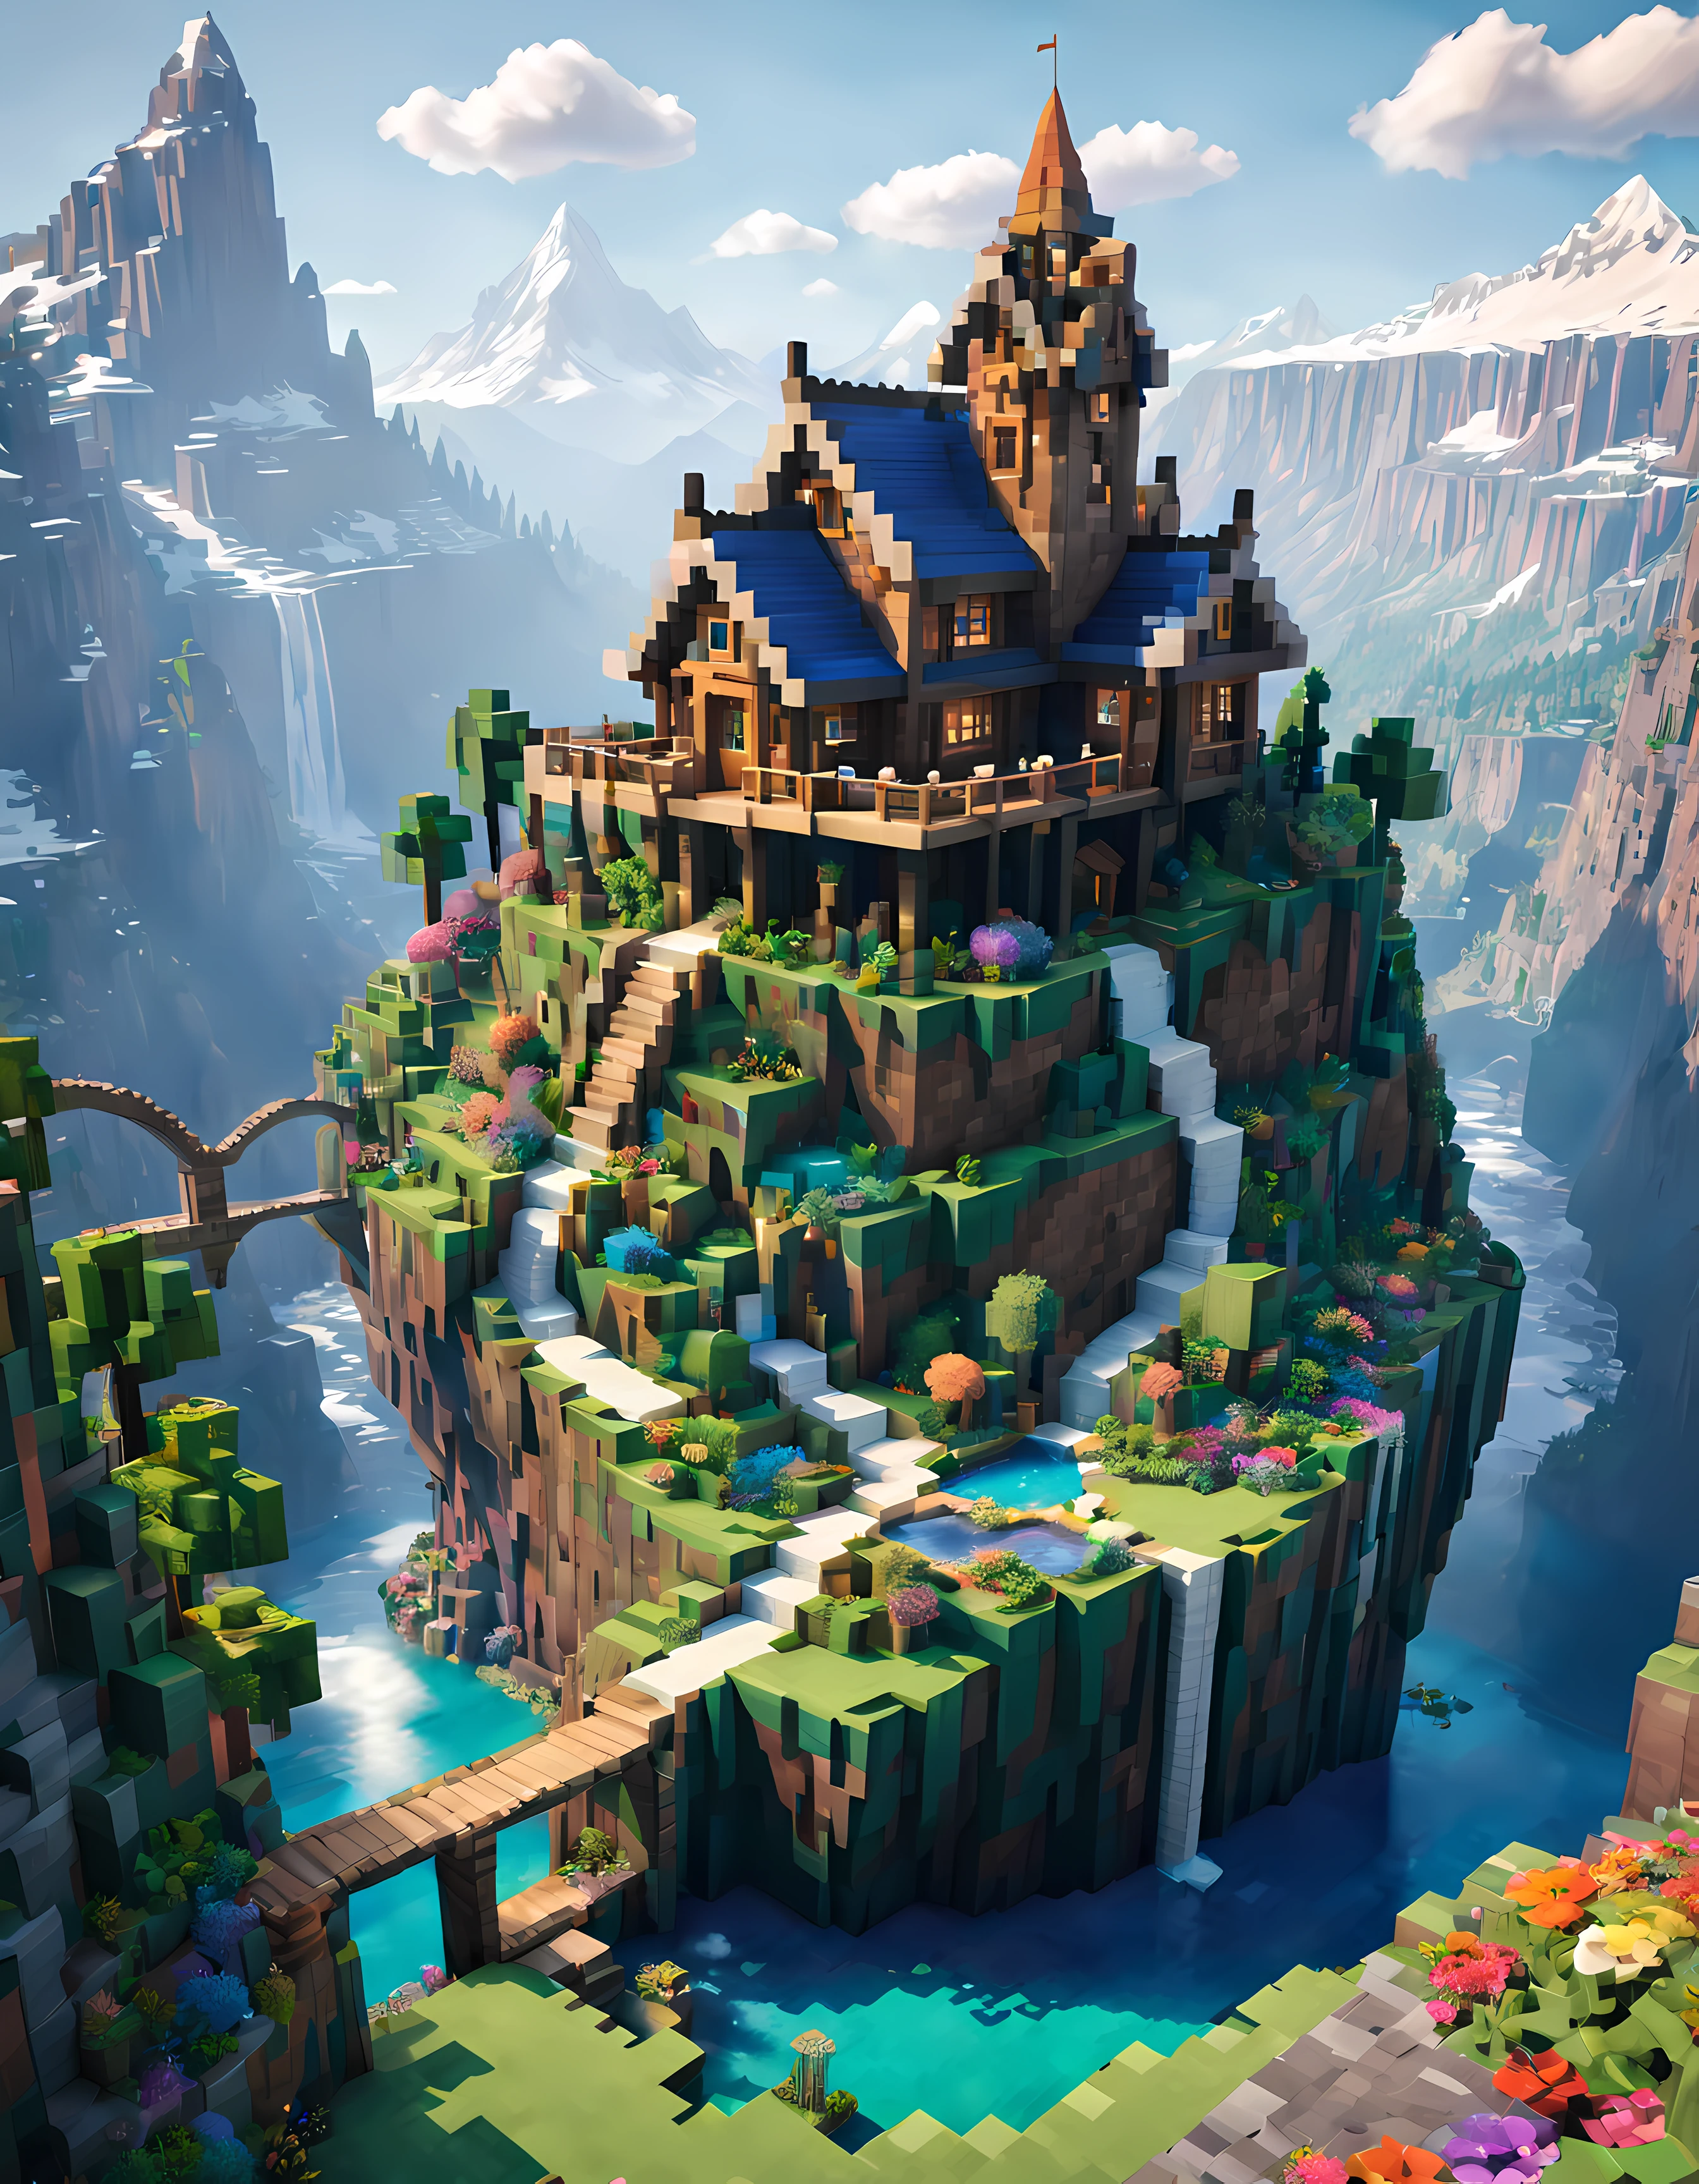 Minecraft-Stil (ultrarealistisch:1.3), (Fernschuss) eines (große, hohe Feenhütte:1.2) mit runden Fenstern, on top eines rocky hill, Umweltkunstwork, Umweltkunst, (elegante Dekorationen), (mystischer Fluss), (Schön:1.4), (attraktiv:1.3), episch verschneit (Berge), sommer natur, blockig, verpixelt, leuchtende Farben, (Adler), Blumen, ätherische Brücken, waterfalls in der Ferne, (Regenbogen:0.5), (Weltenbaum) in der Ferne